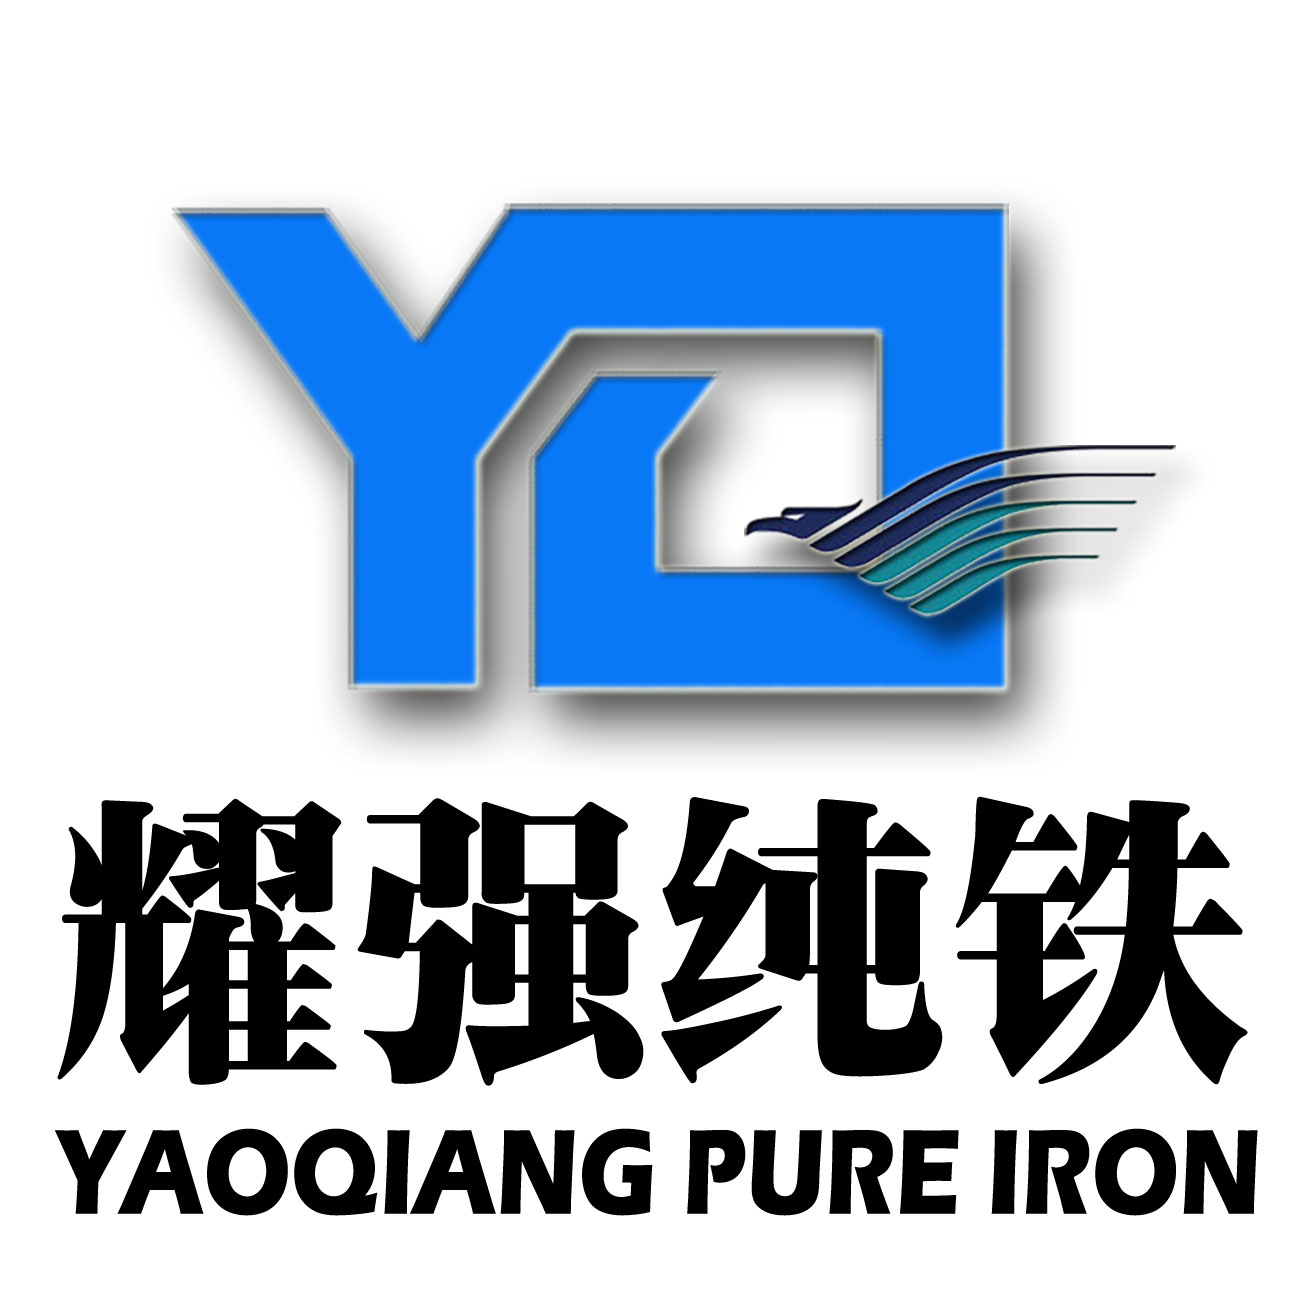 炉料纯铁，铸造纯铁，非晶用纯铁YT01现货供应